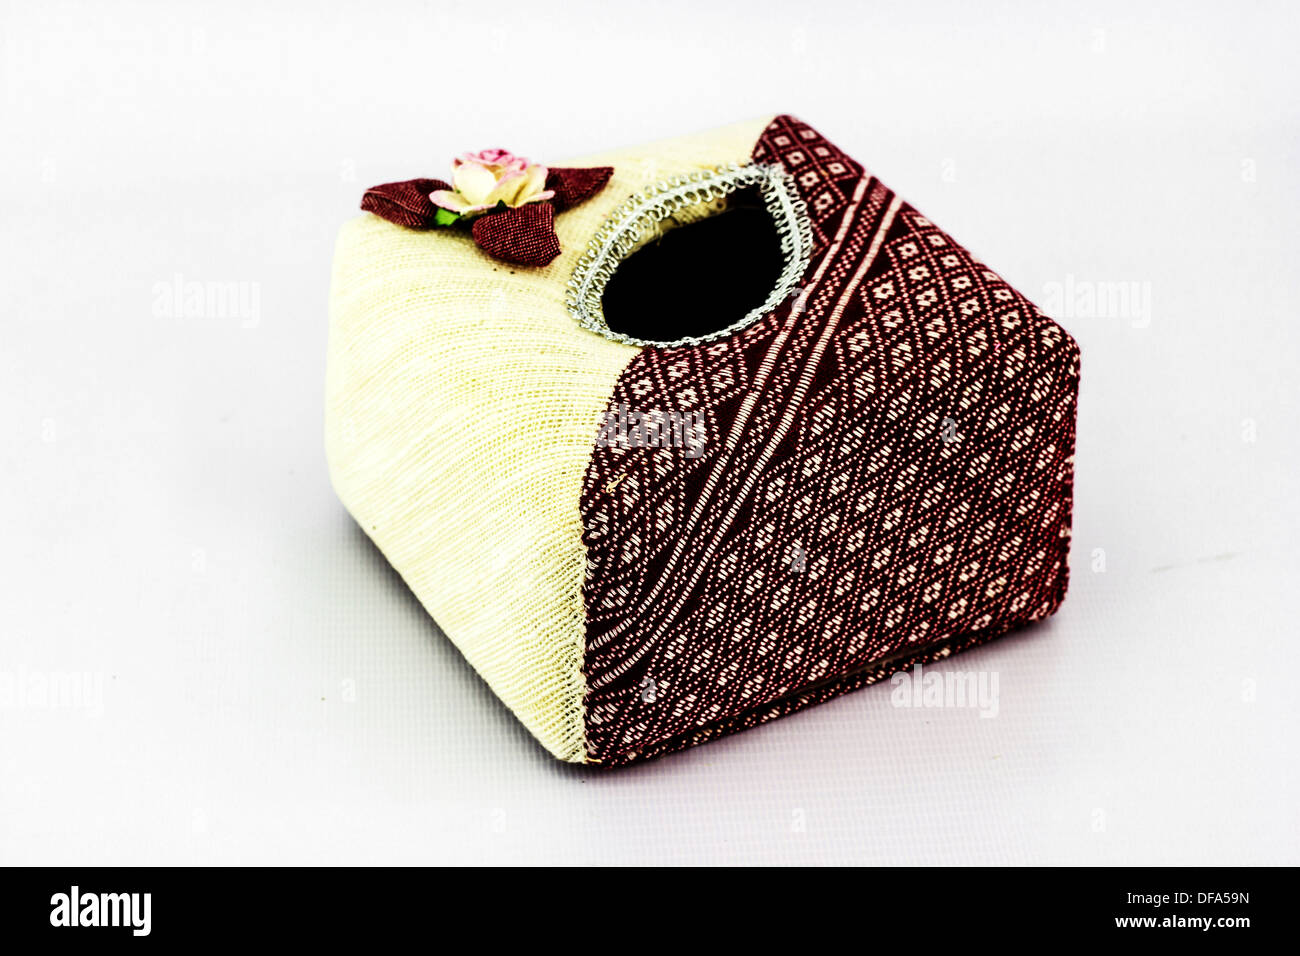 The Tissue box designs in asia Stock Photo